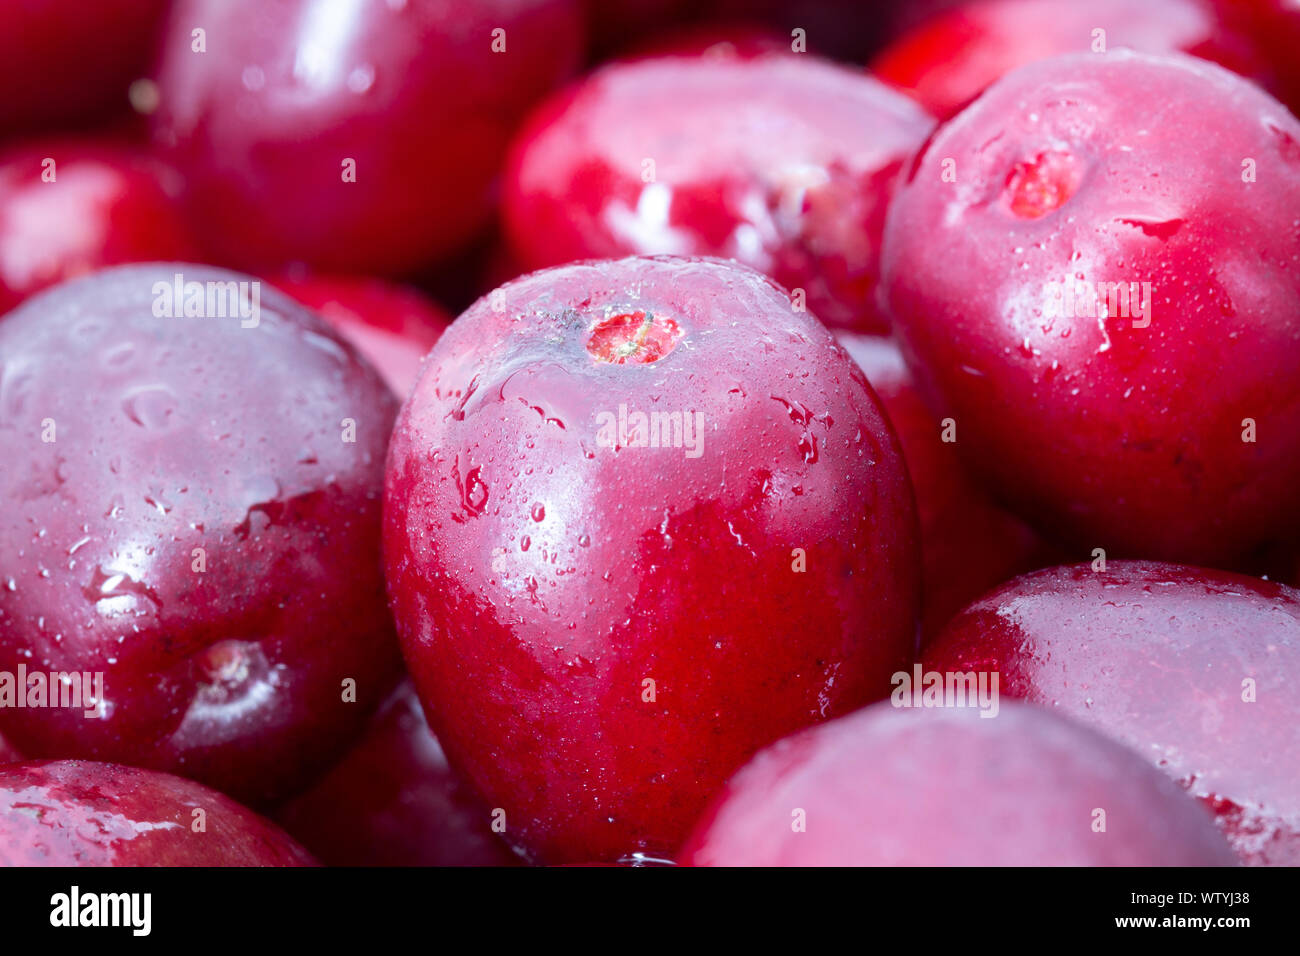 Cornus mas (Cornelian cherry) berries Stock Photo